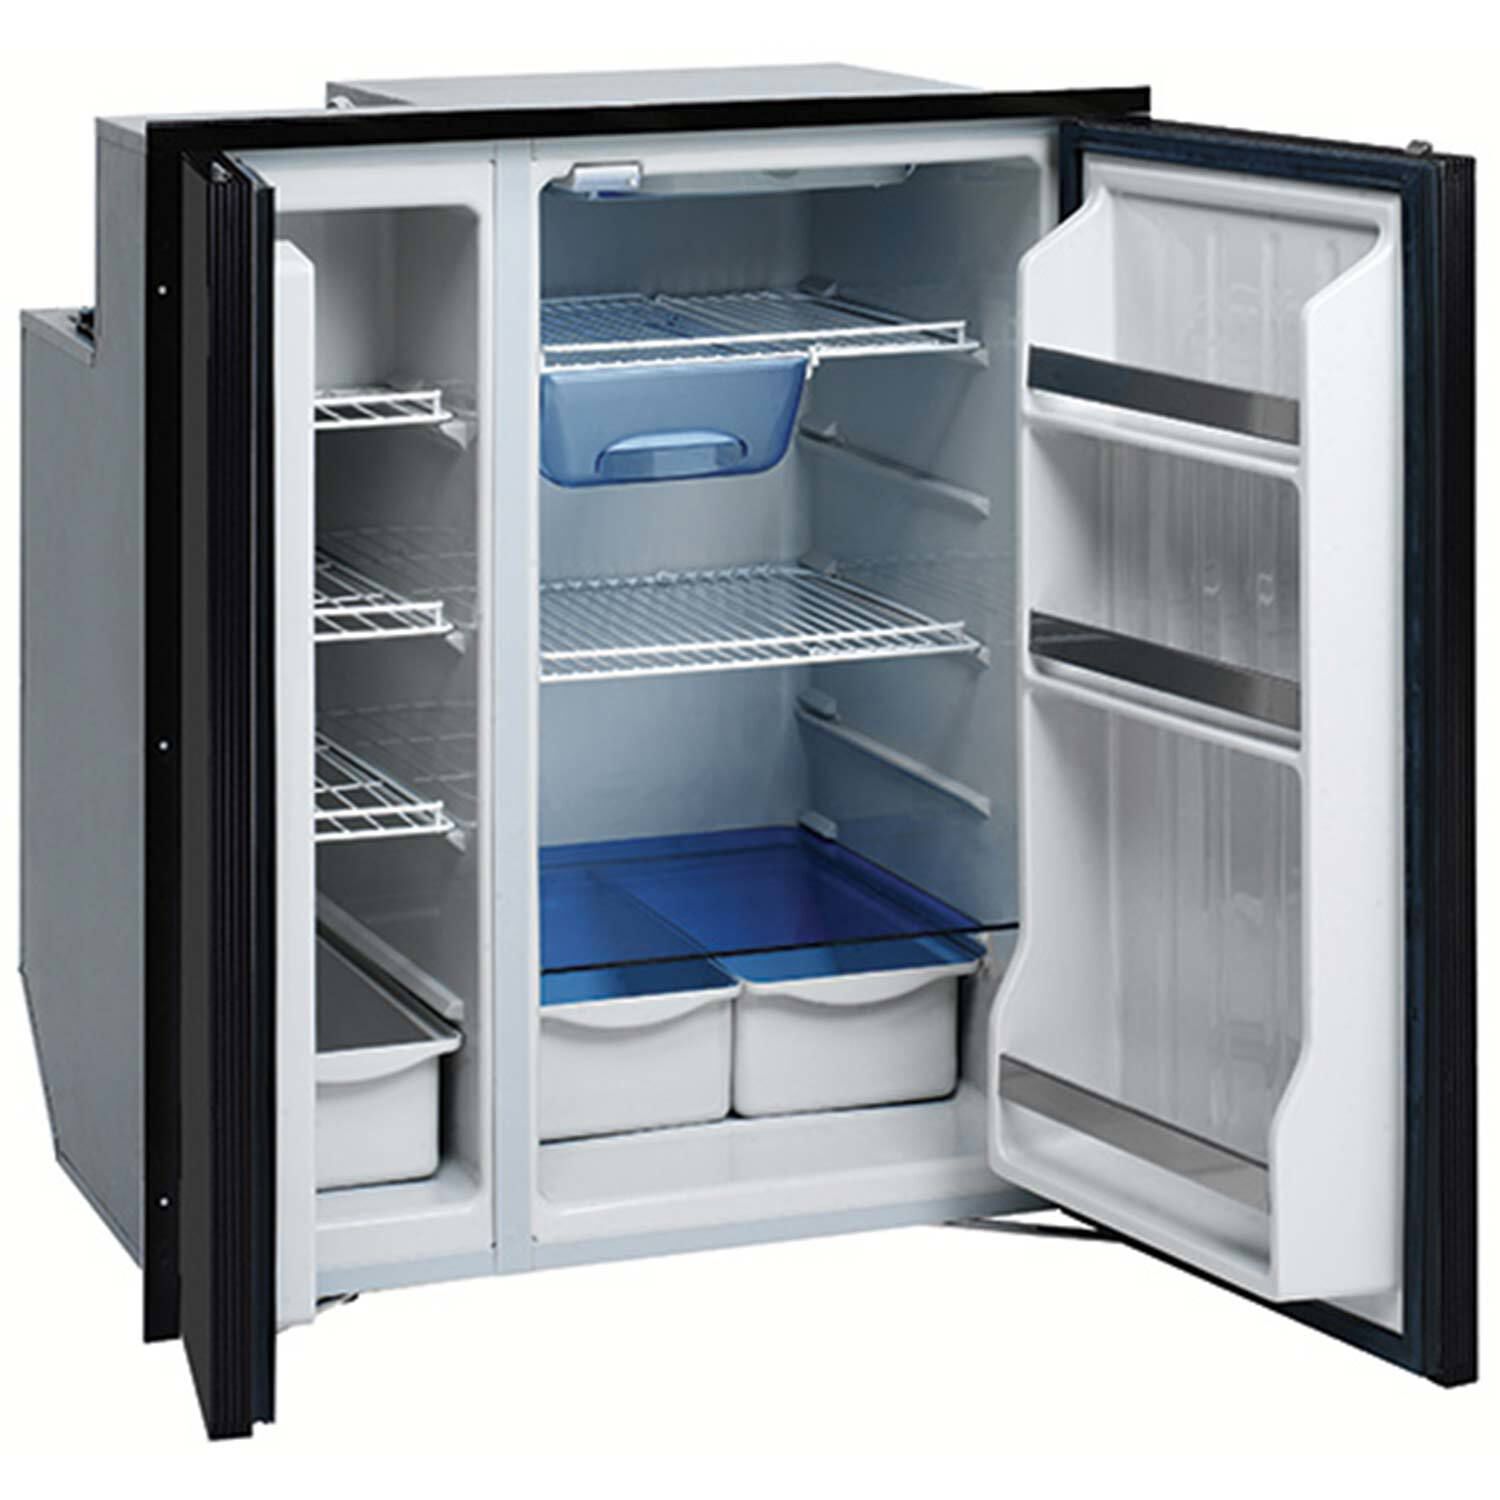 Купить холодильник в алматы. Холодильник Freezer Refrigerator. Холодильник Isotherm. Холодильник Бирюса двухдверный. Двухдверный холодильный professional 1200.